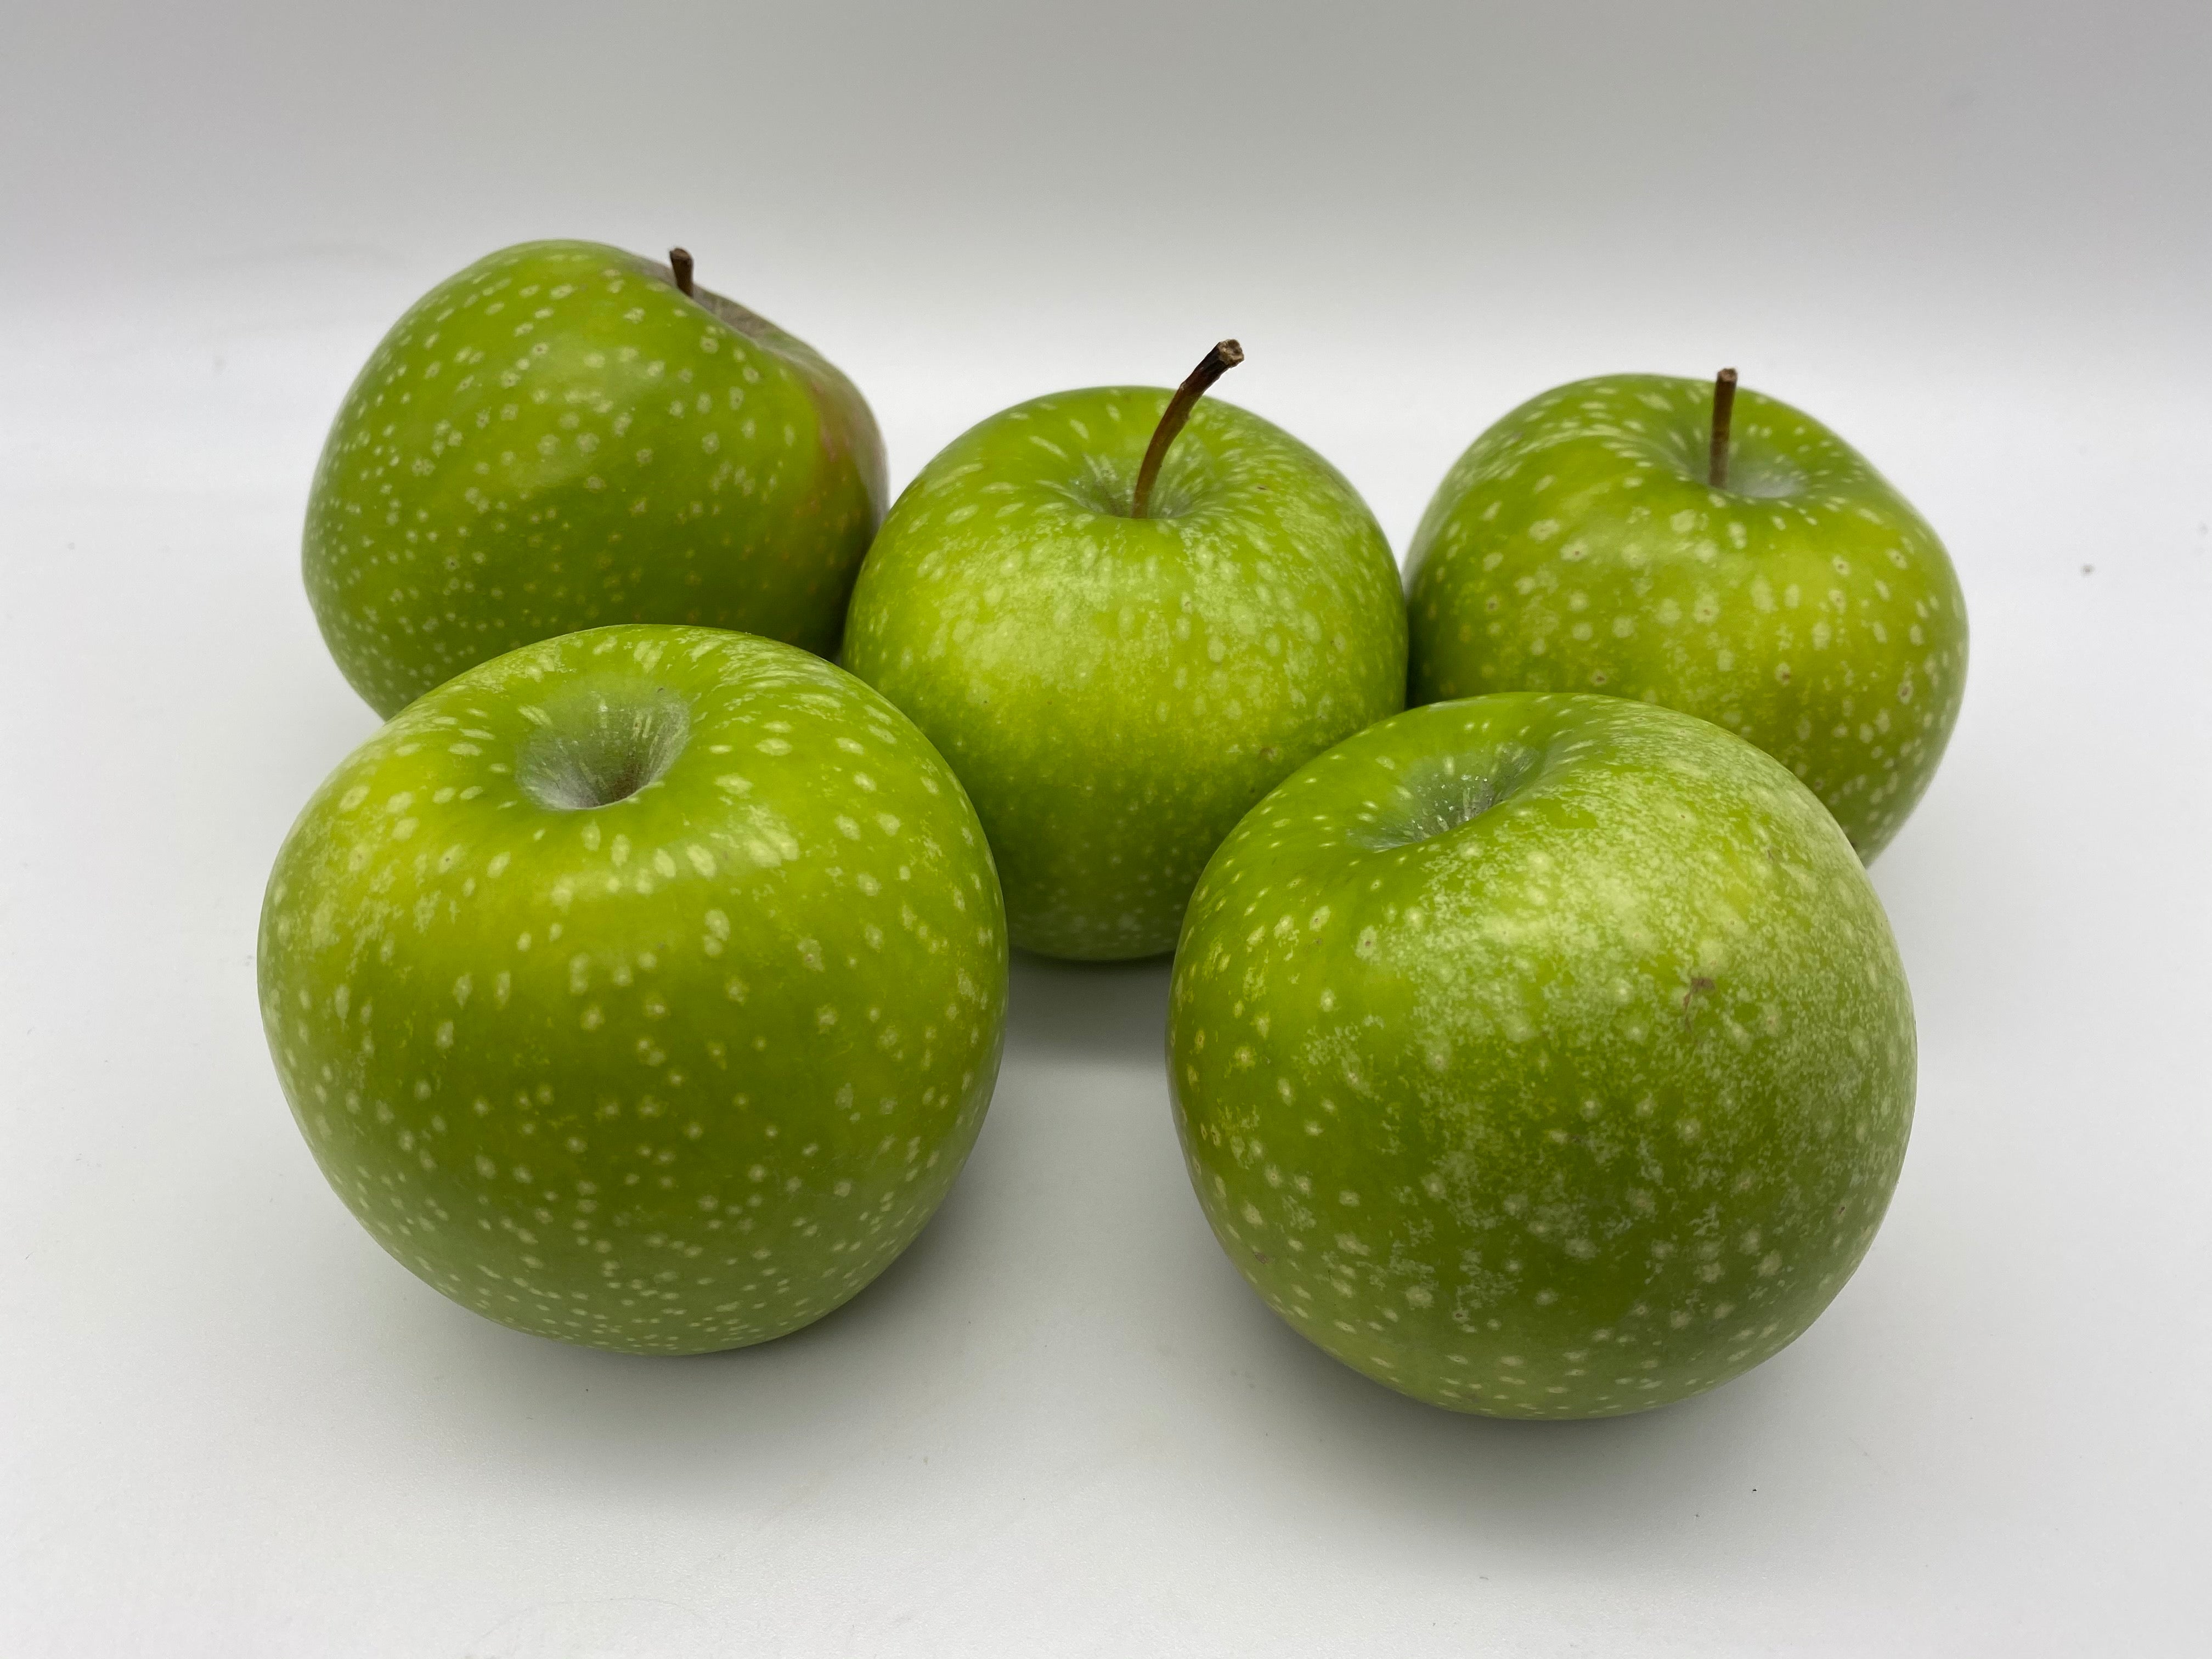 Granny Smith Apples - 6ea - Teddy Bear Fresh Produce